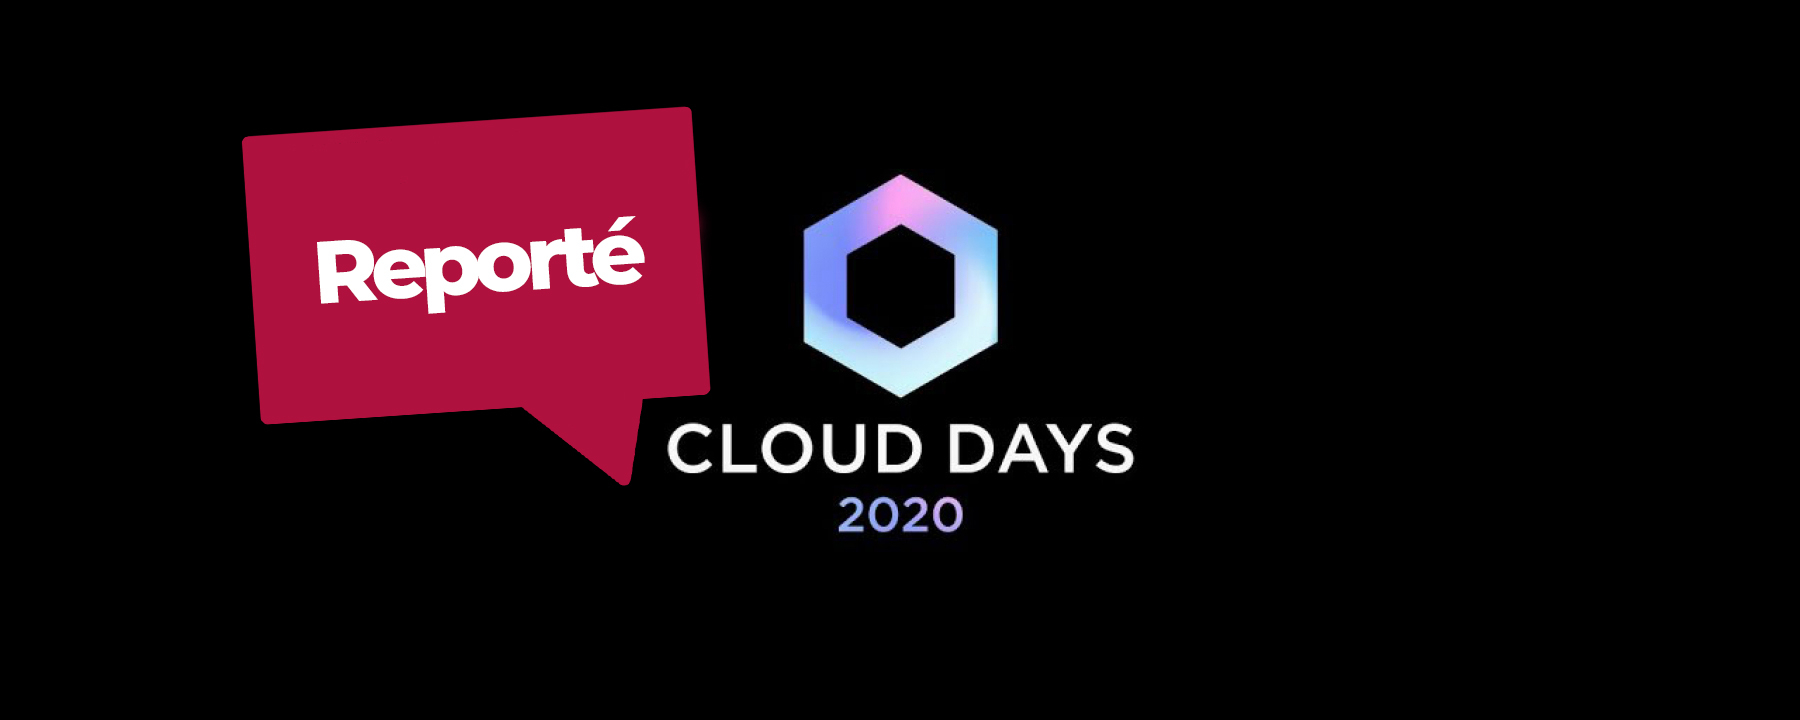 Événement Cloud Days 2020, le 25 juin 2020, à l'Espace Grande Arche, organisé par 3DS Outscale, reporté